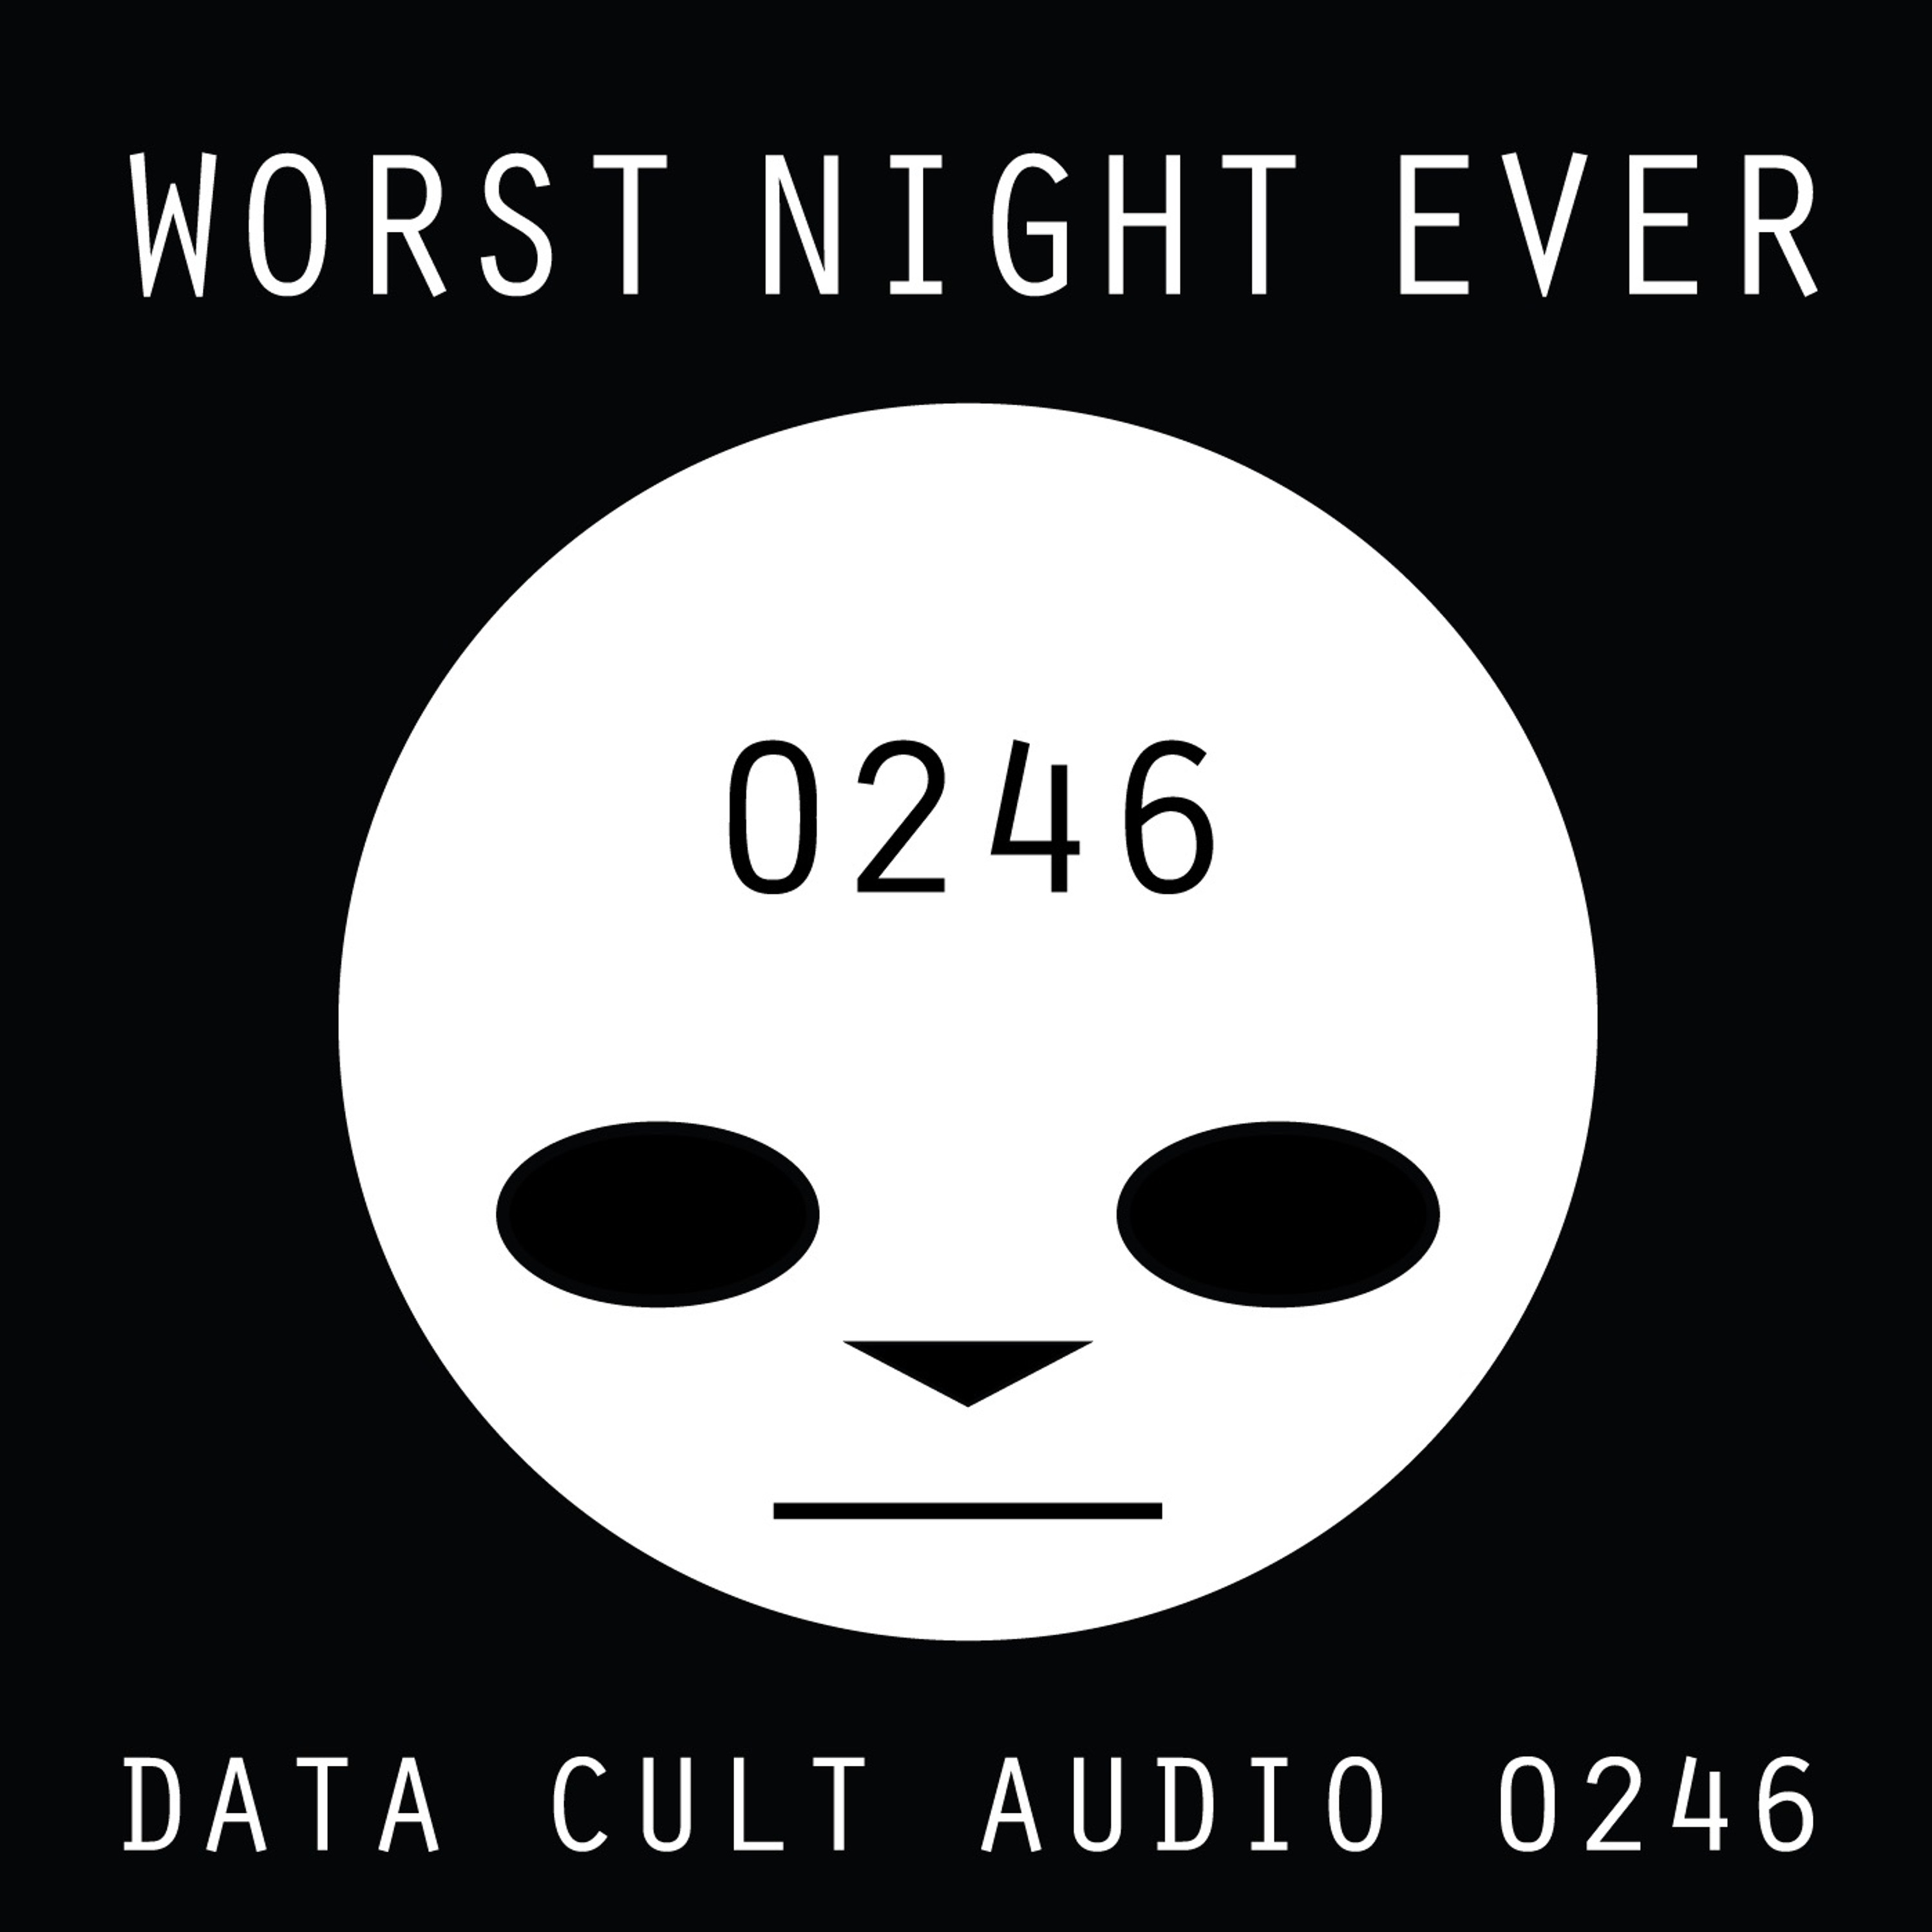 Data Cult Audio 0246 - Worst Night Ever